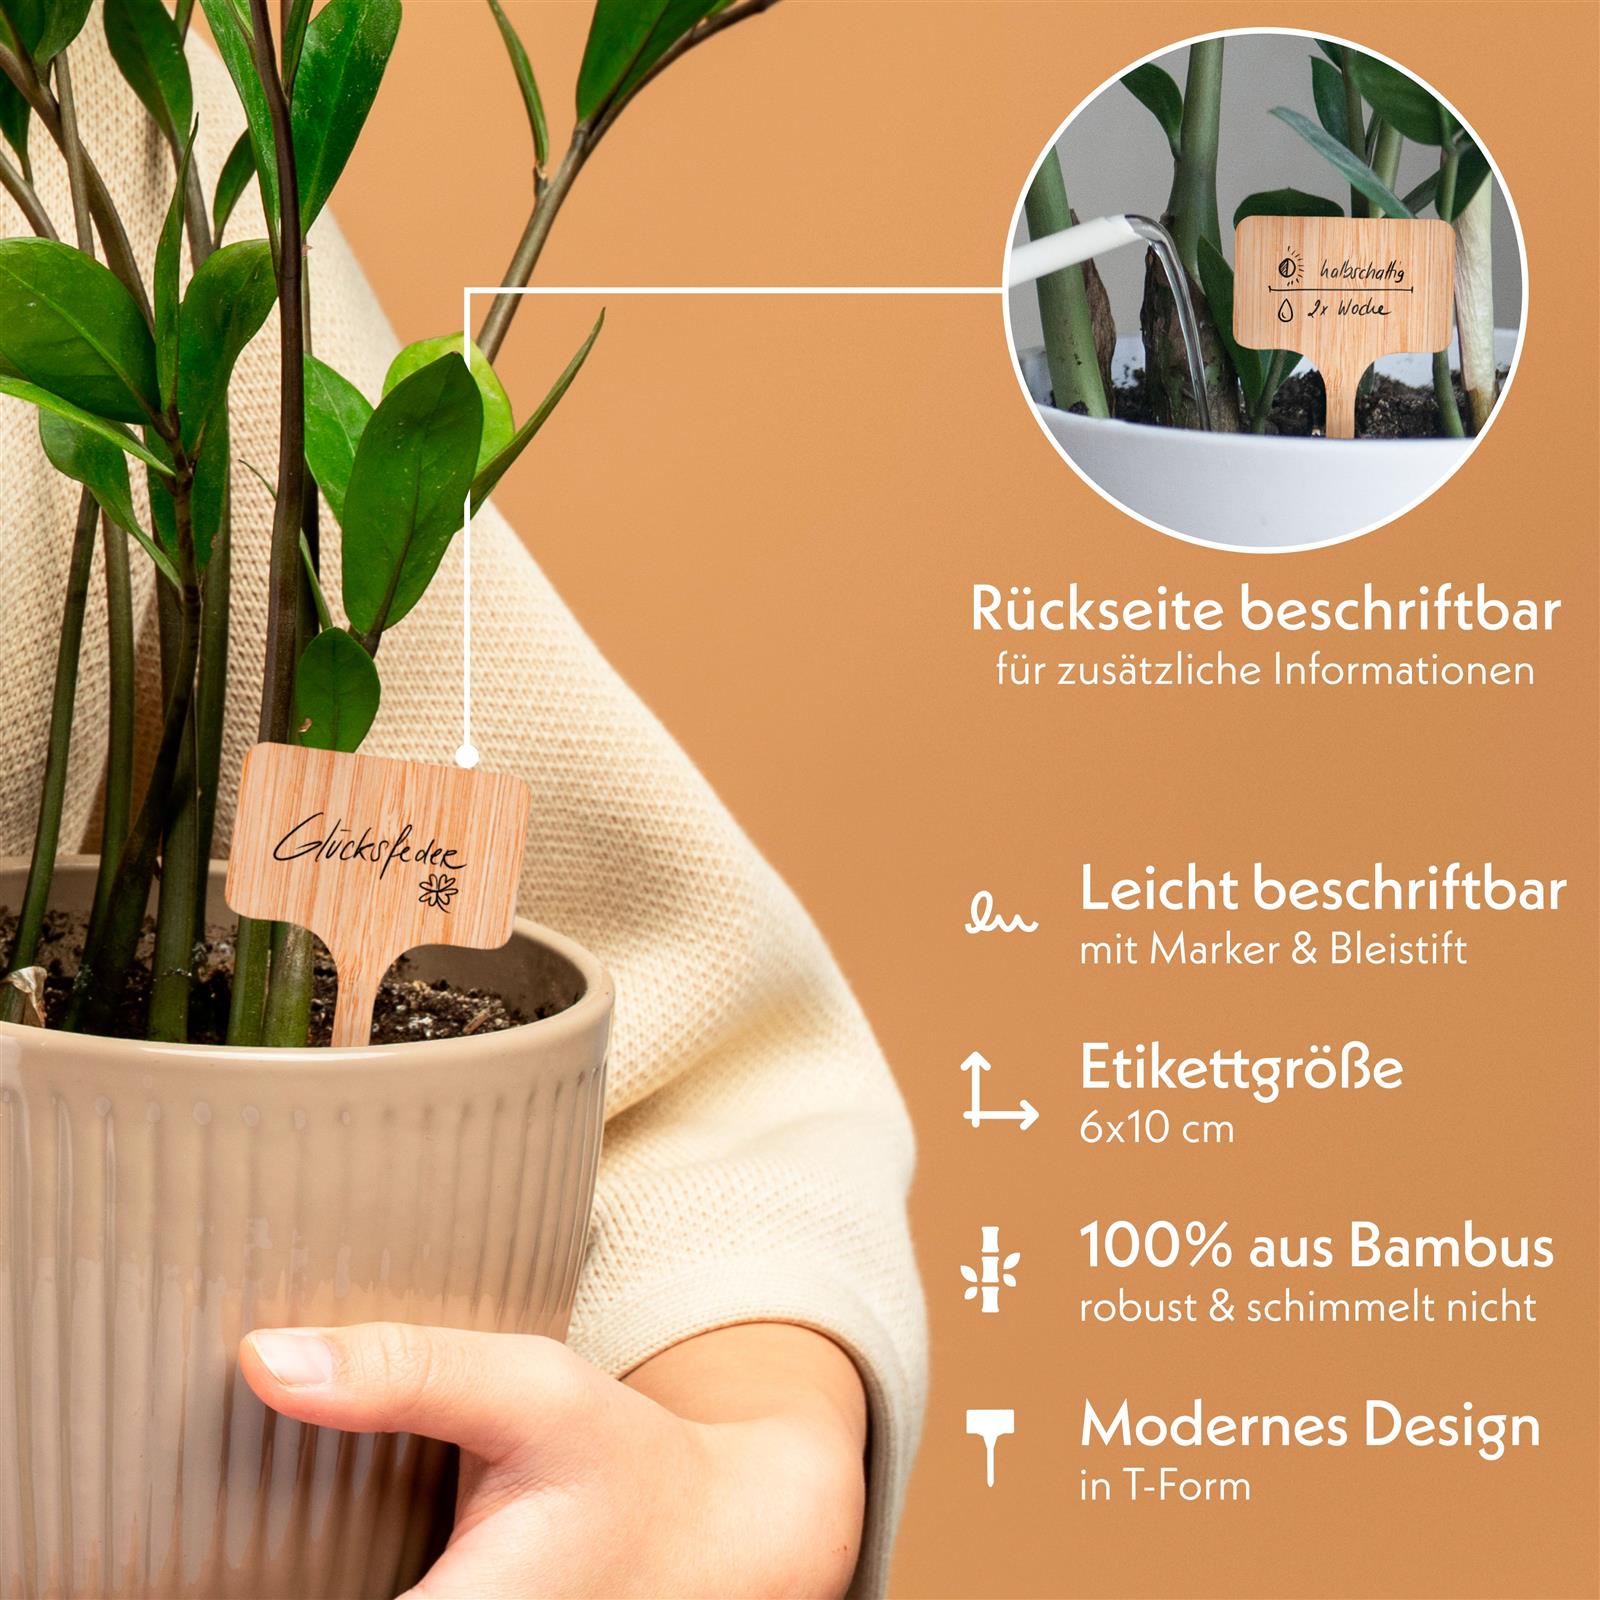 30x Pflanzenstecker zum Beschriften aus Bambus inklusive Marker - Umweltfreundliche Pflanzenschilder für Anzuchttöpfe, Keimlinge und Stecklinge